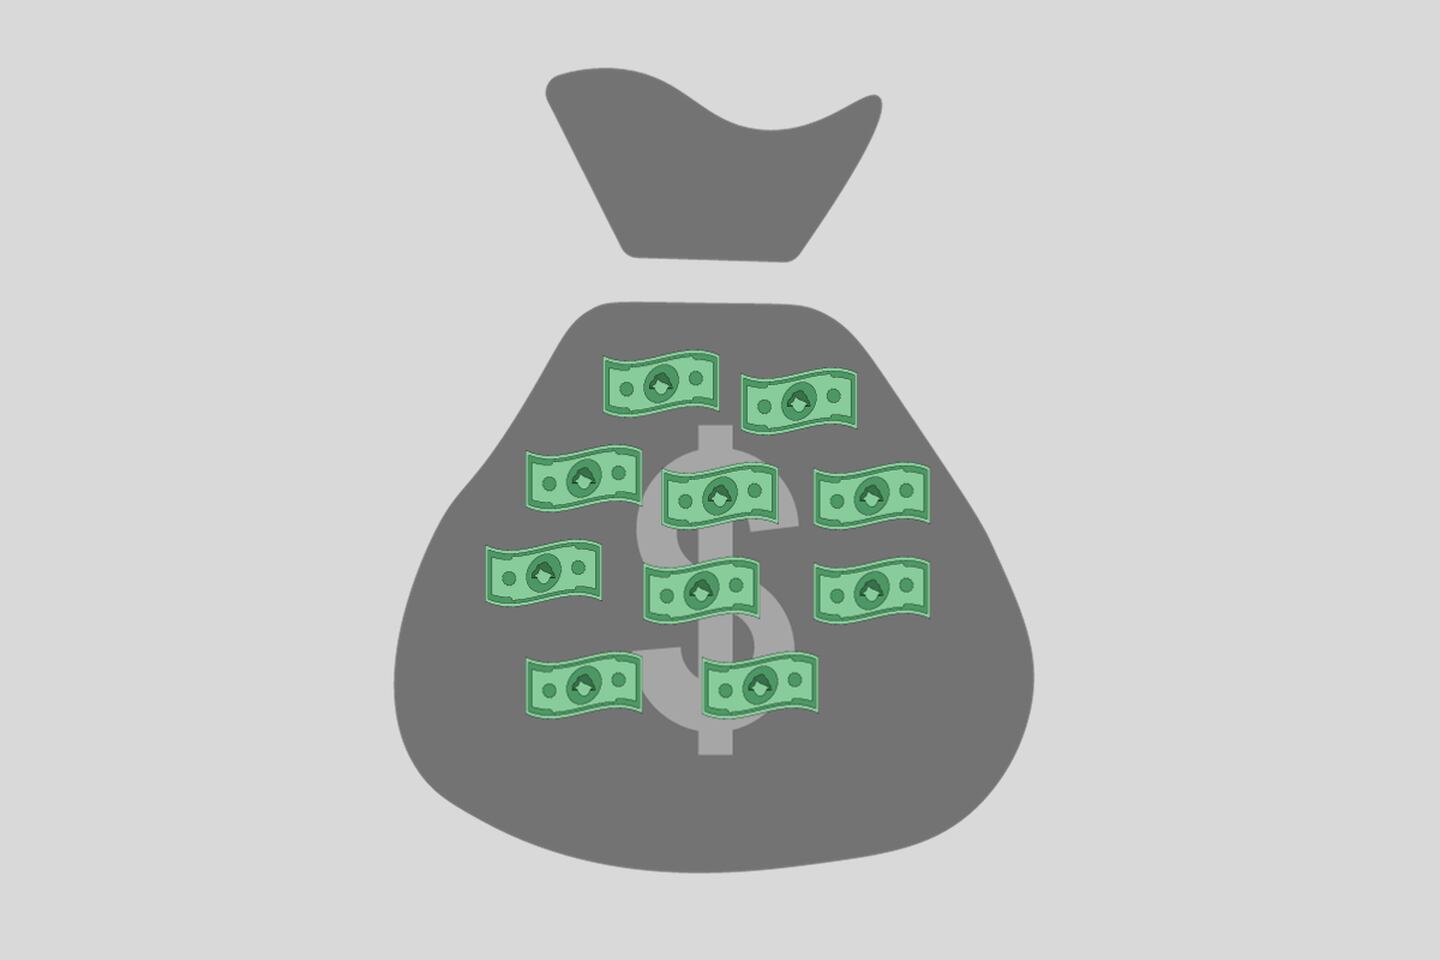 Dibujo de una bolsa verde de dinero, que está sobre un fondo gris.  También se ven diez billetes verdes, encima de la bolsa.